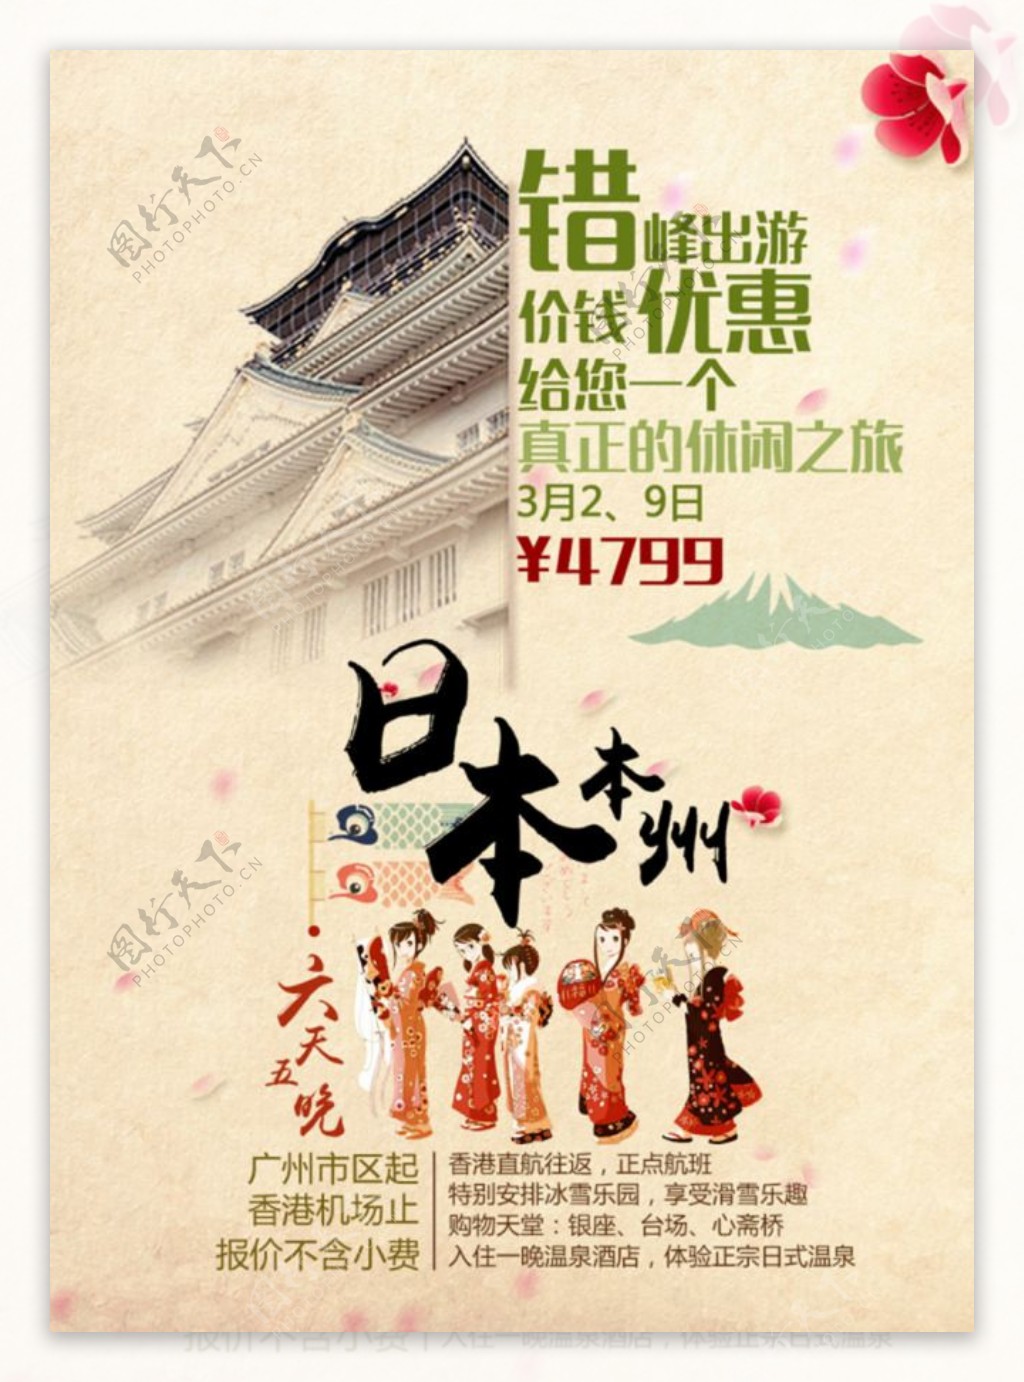 日本旅游促销海报psd免费下载